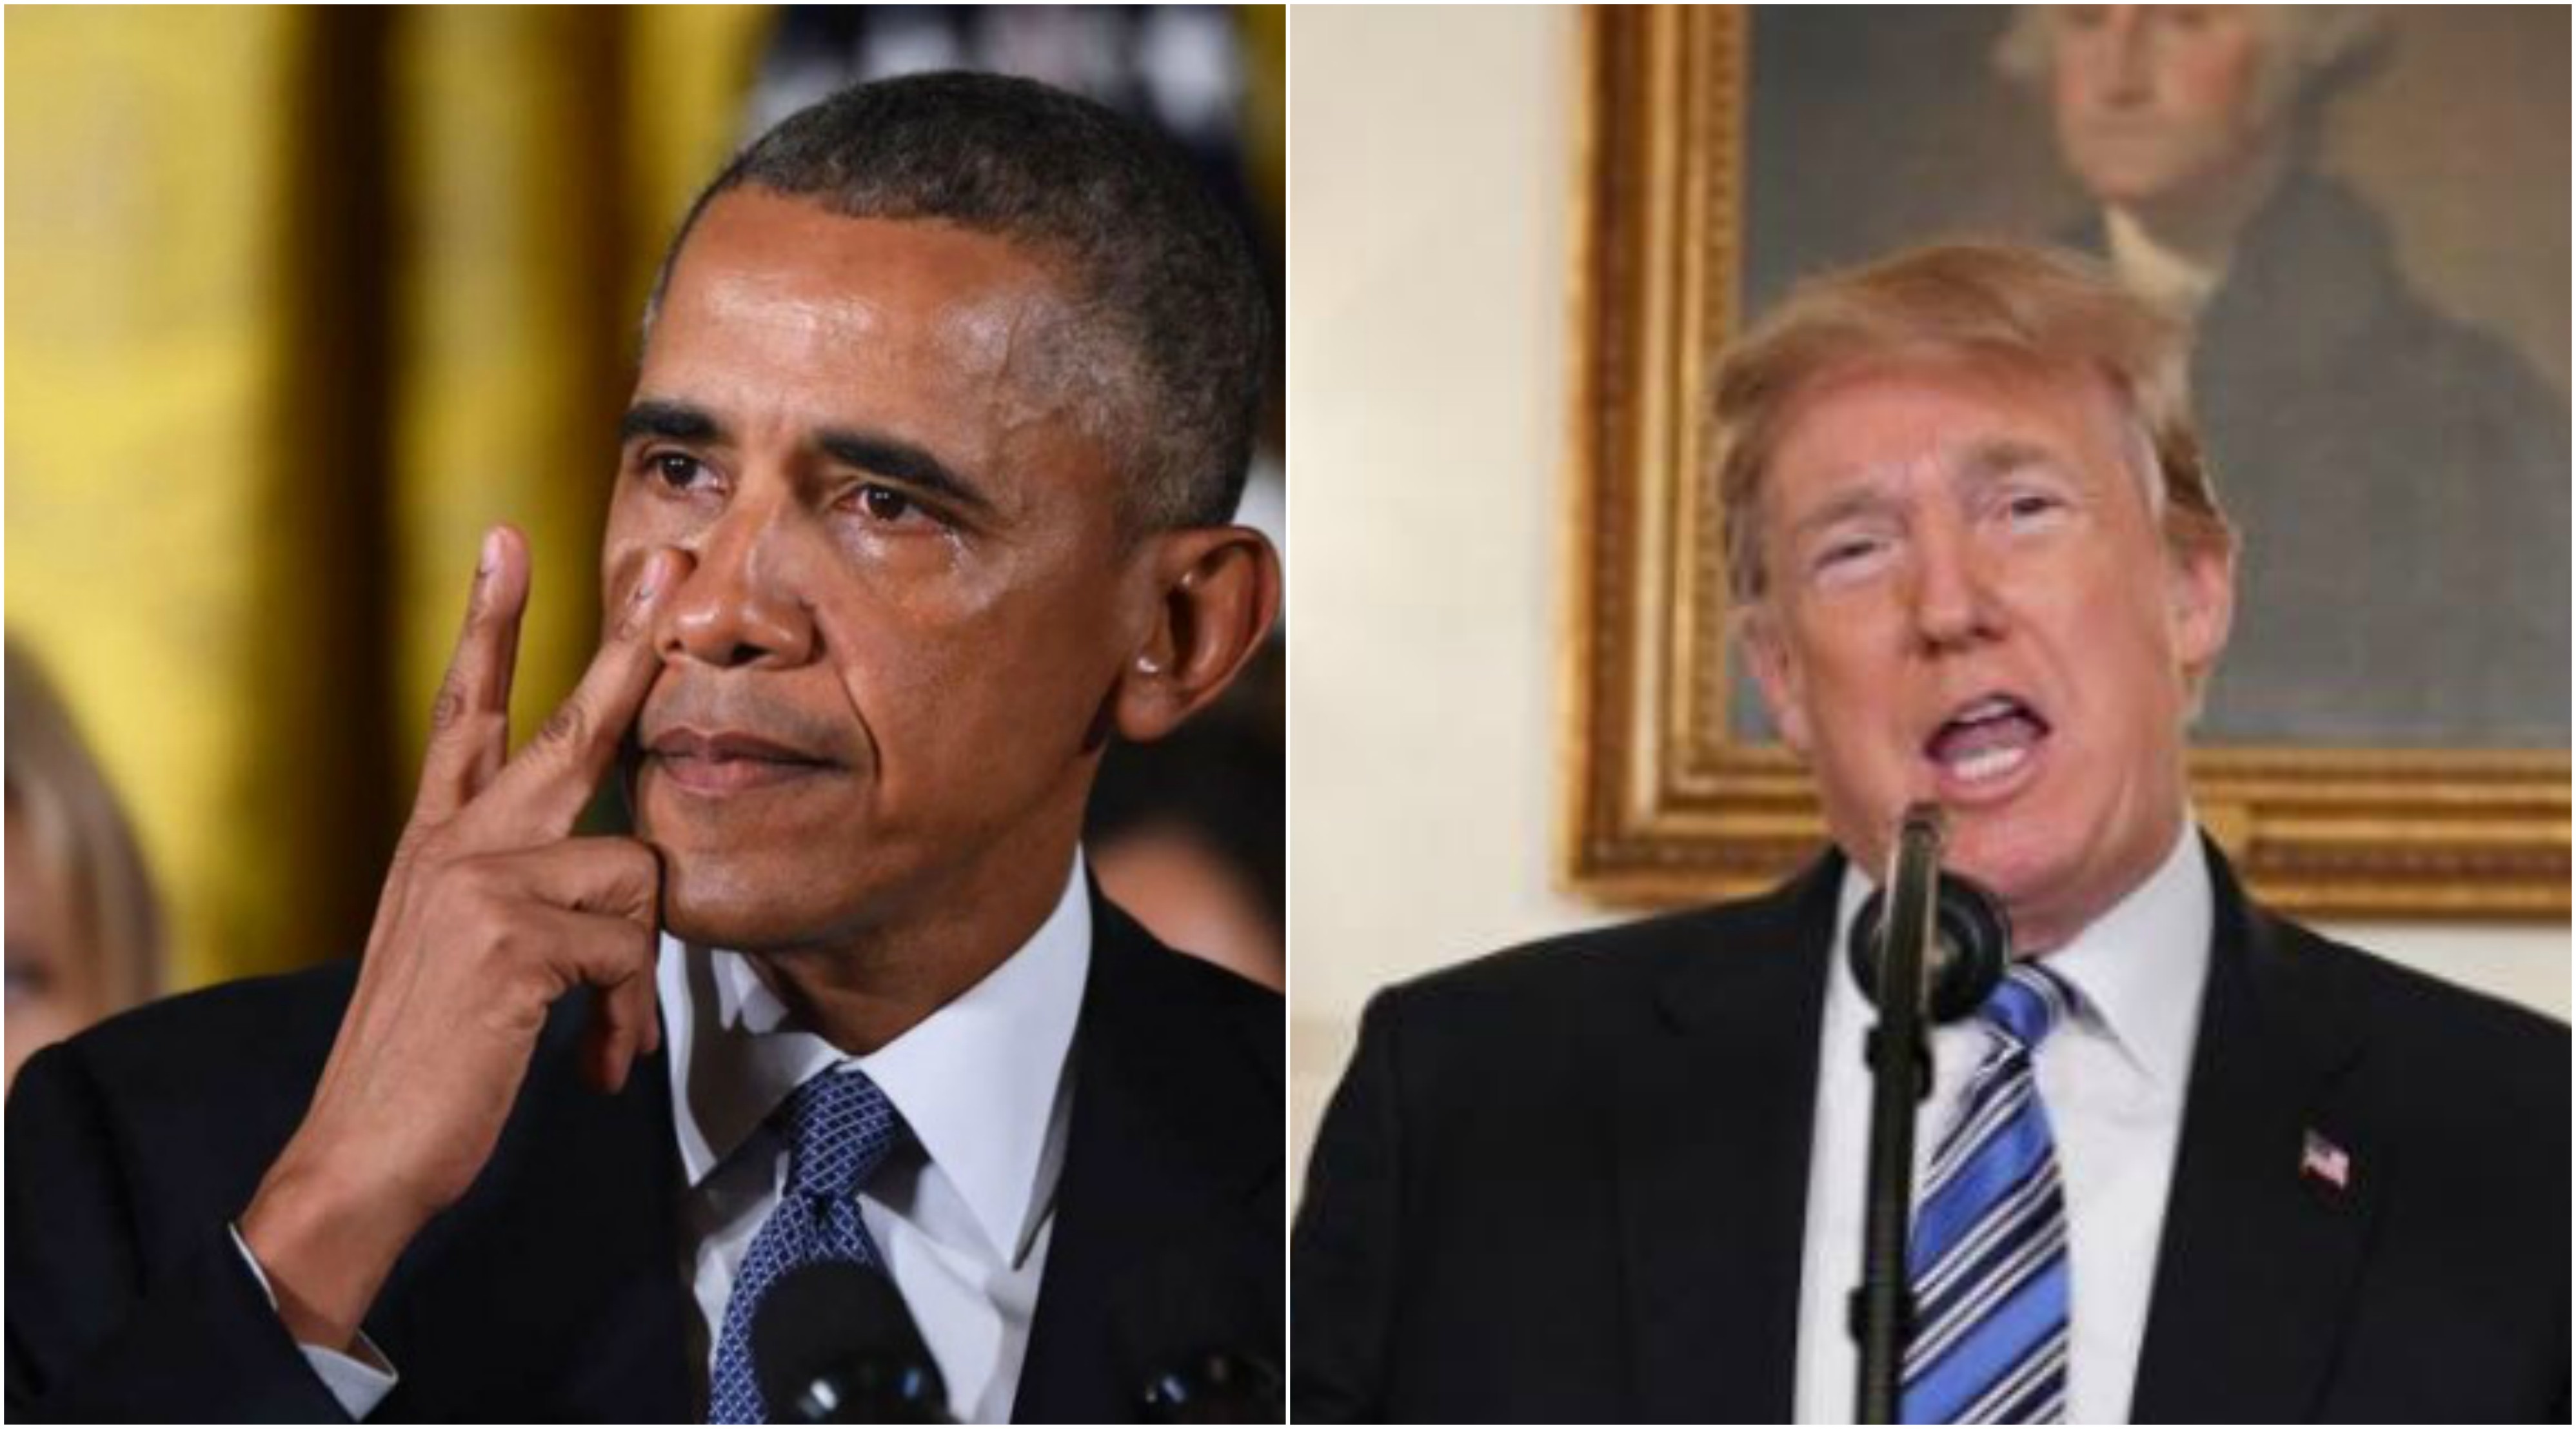 El Fotógrafo de Barack Obama ataca a Donald Trump